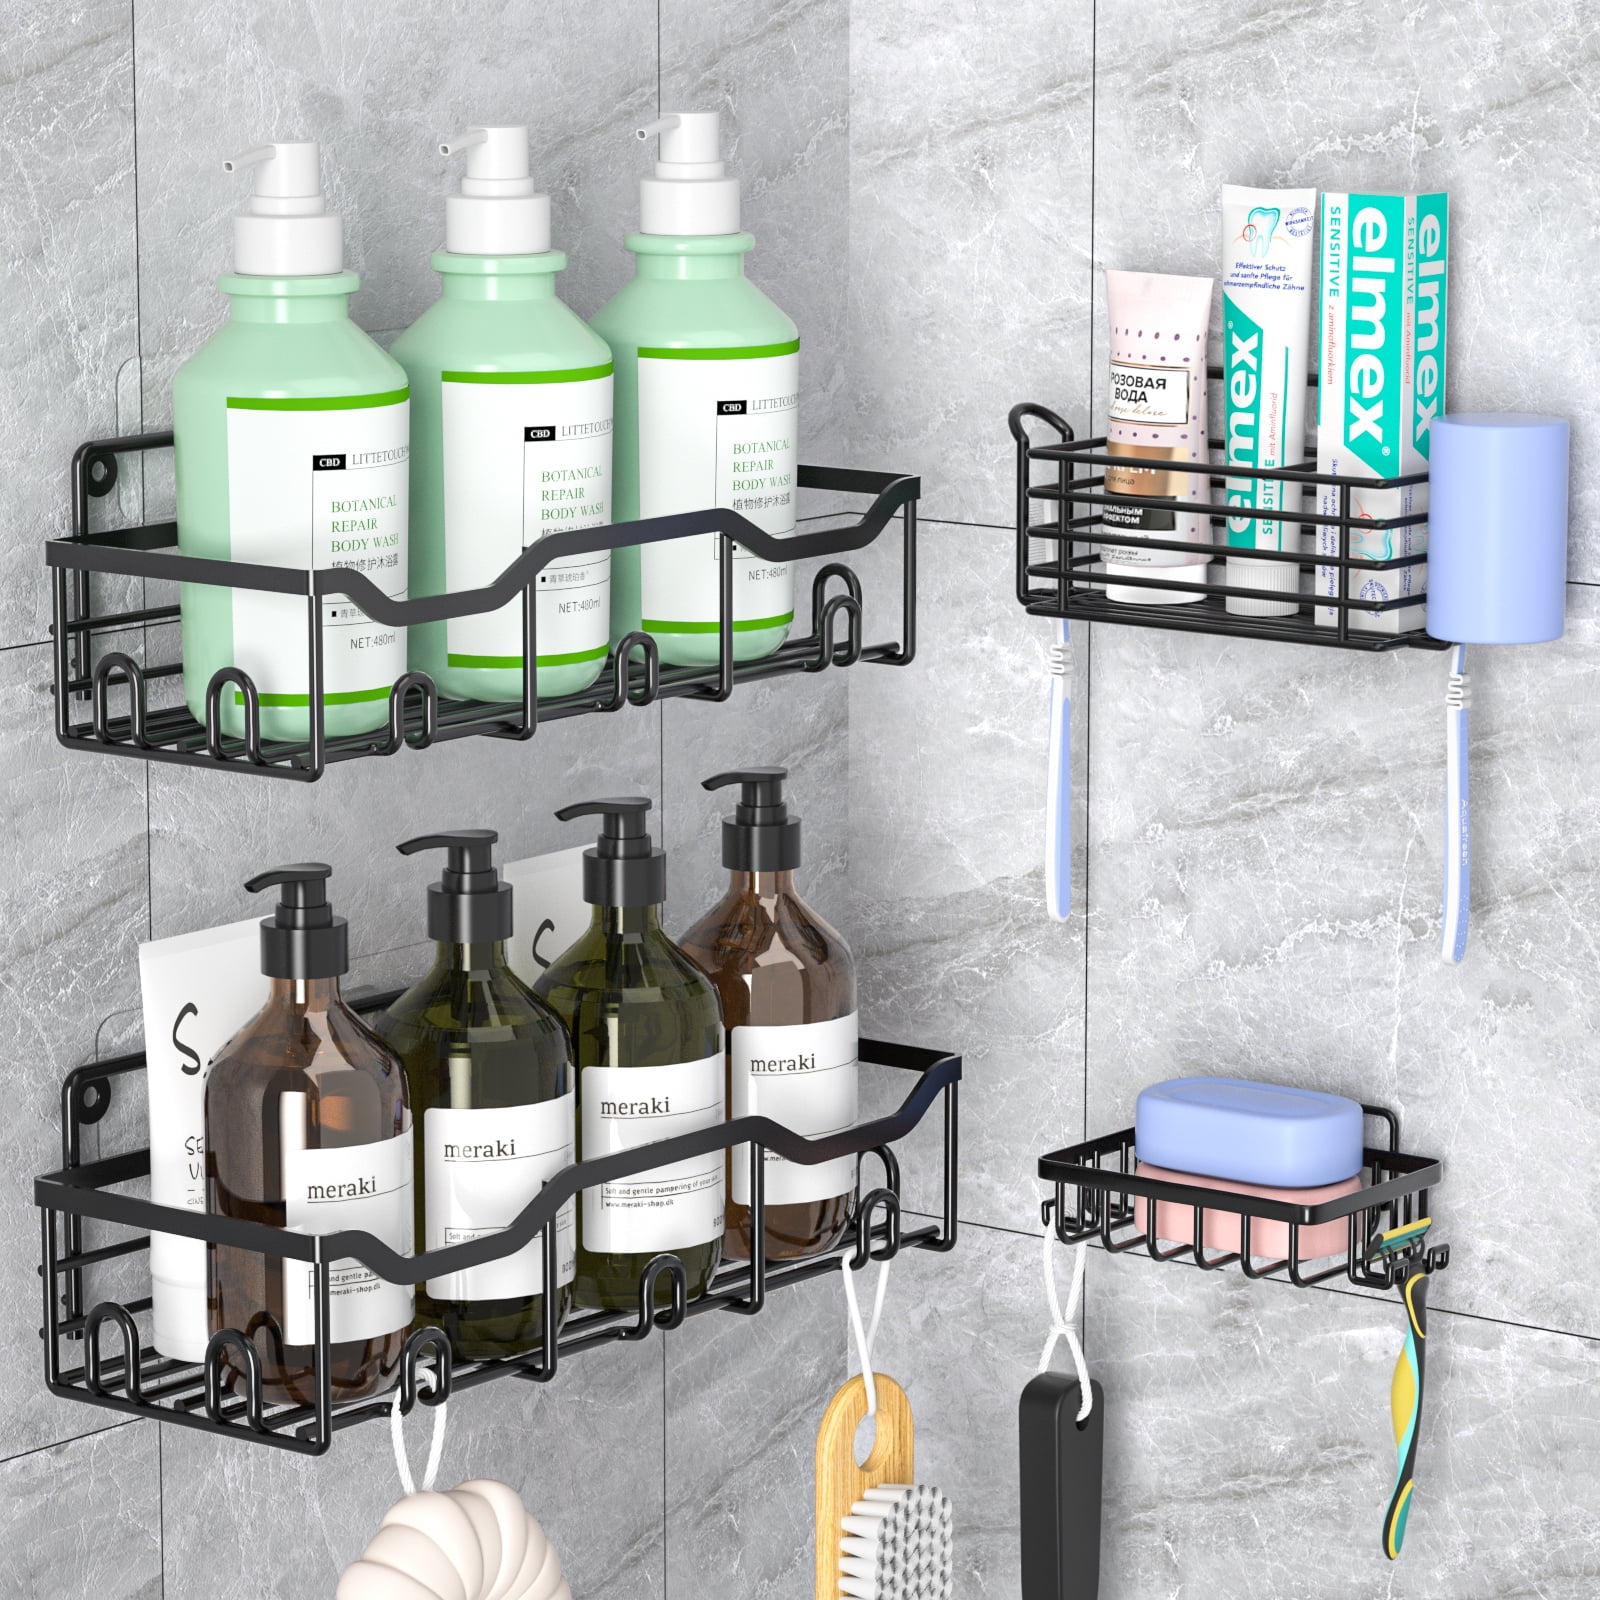 Koovon Shower Caddy, Adhesive Shower Organizer for Bathroom